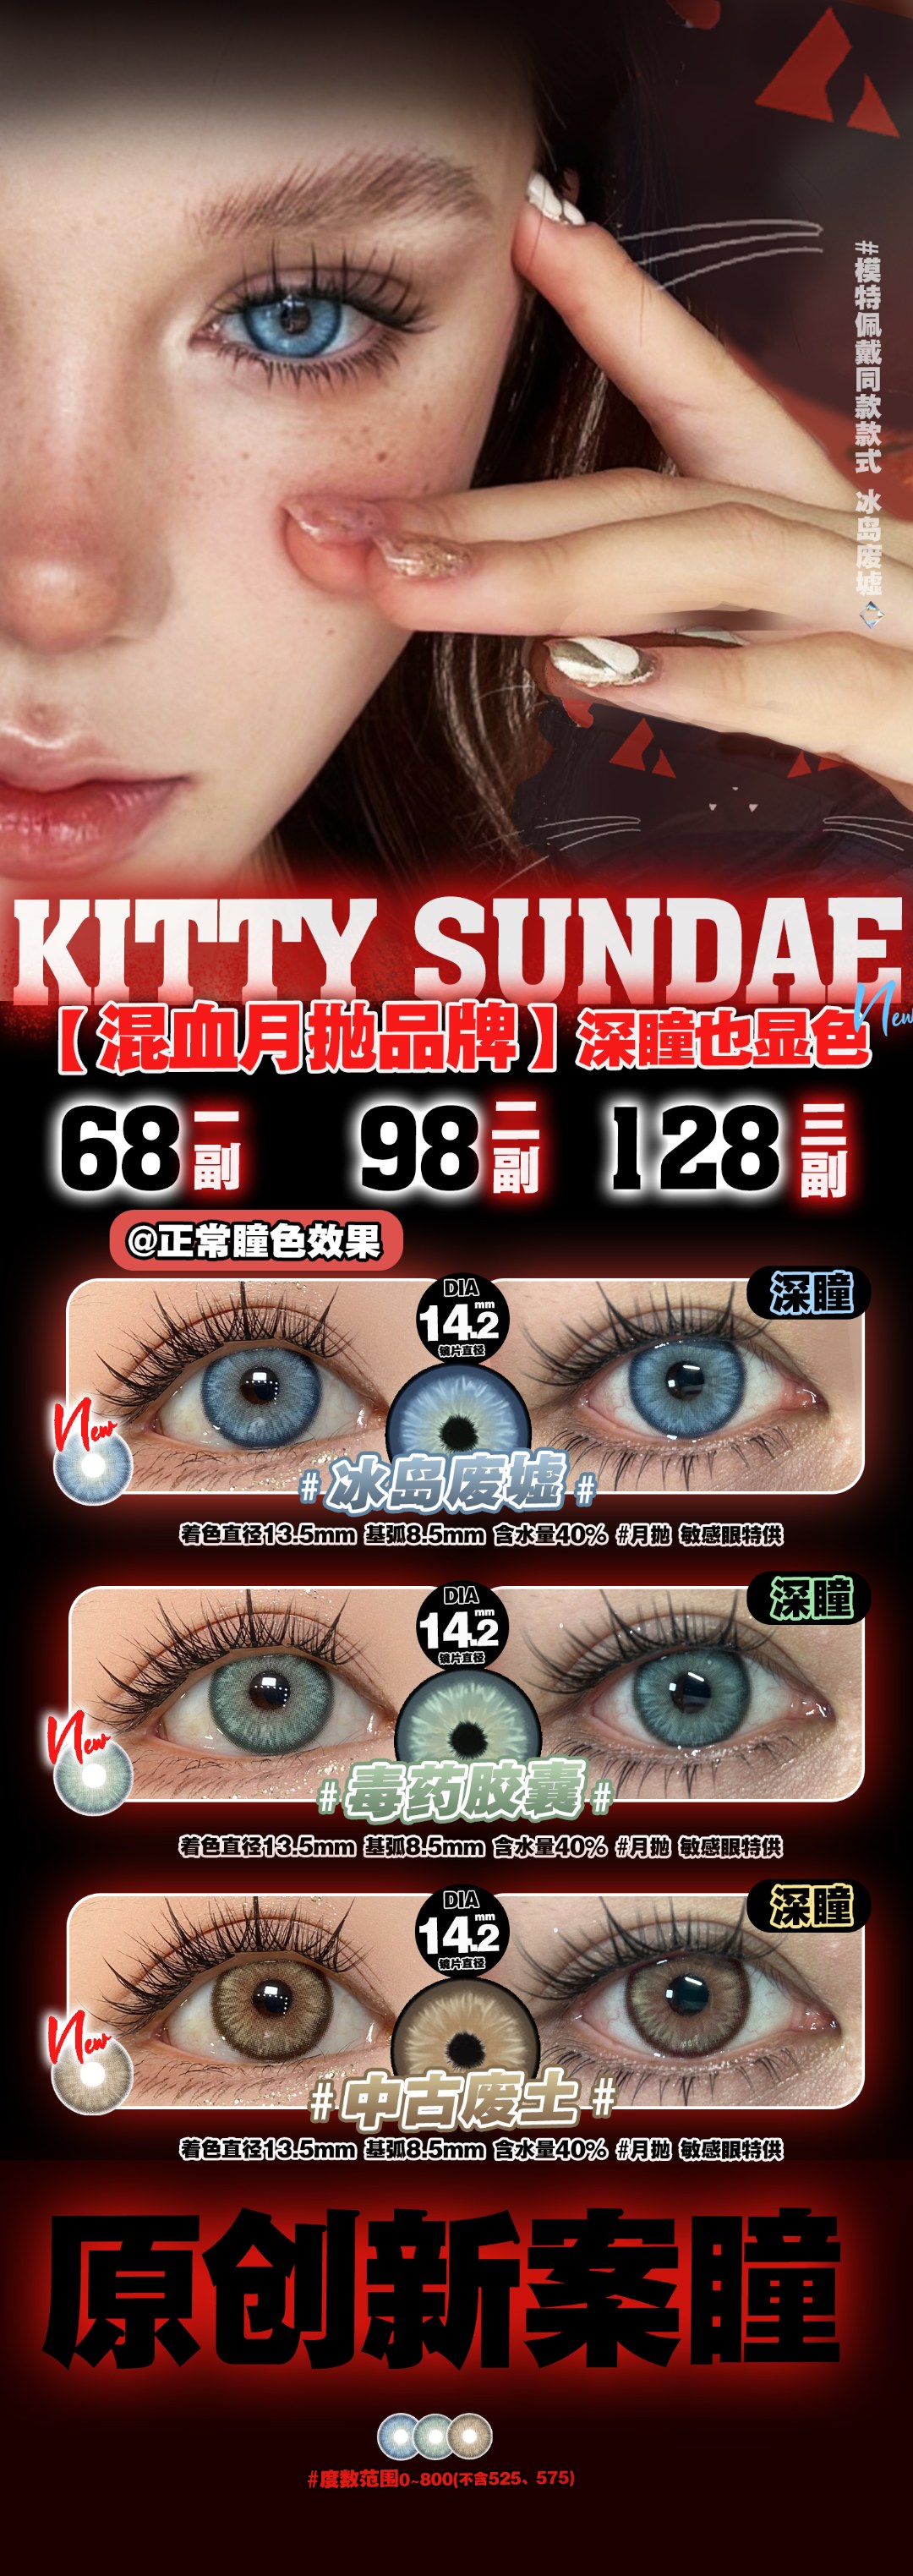 【月抛】Kittysundae 混血月抛品牌 龙年开年新活动